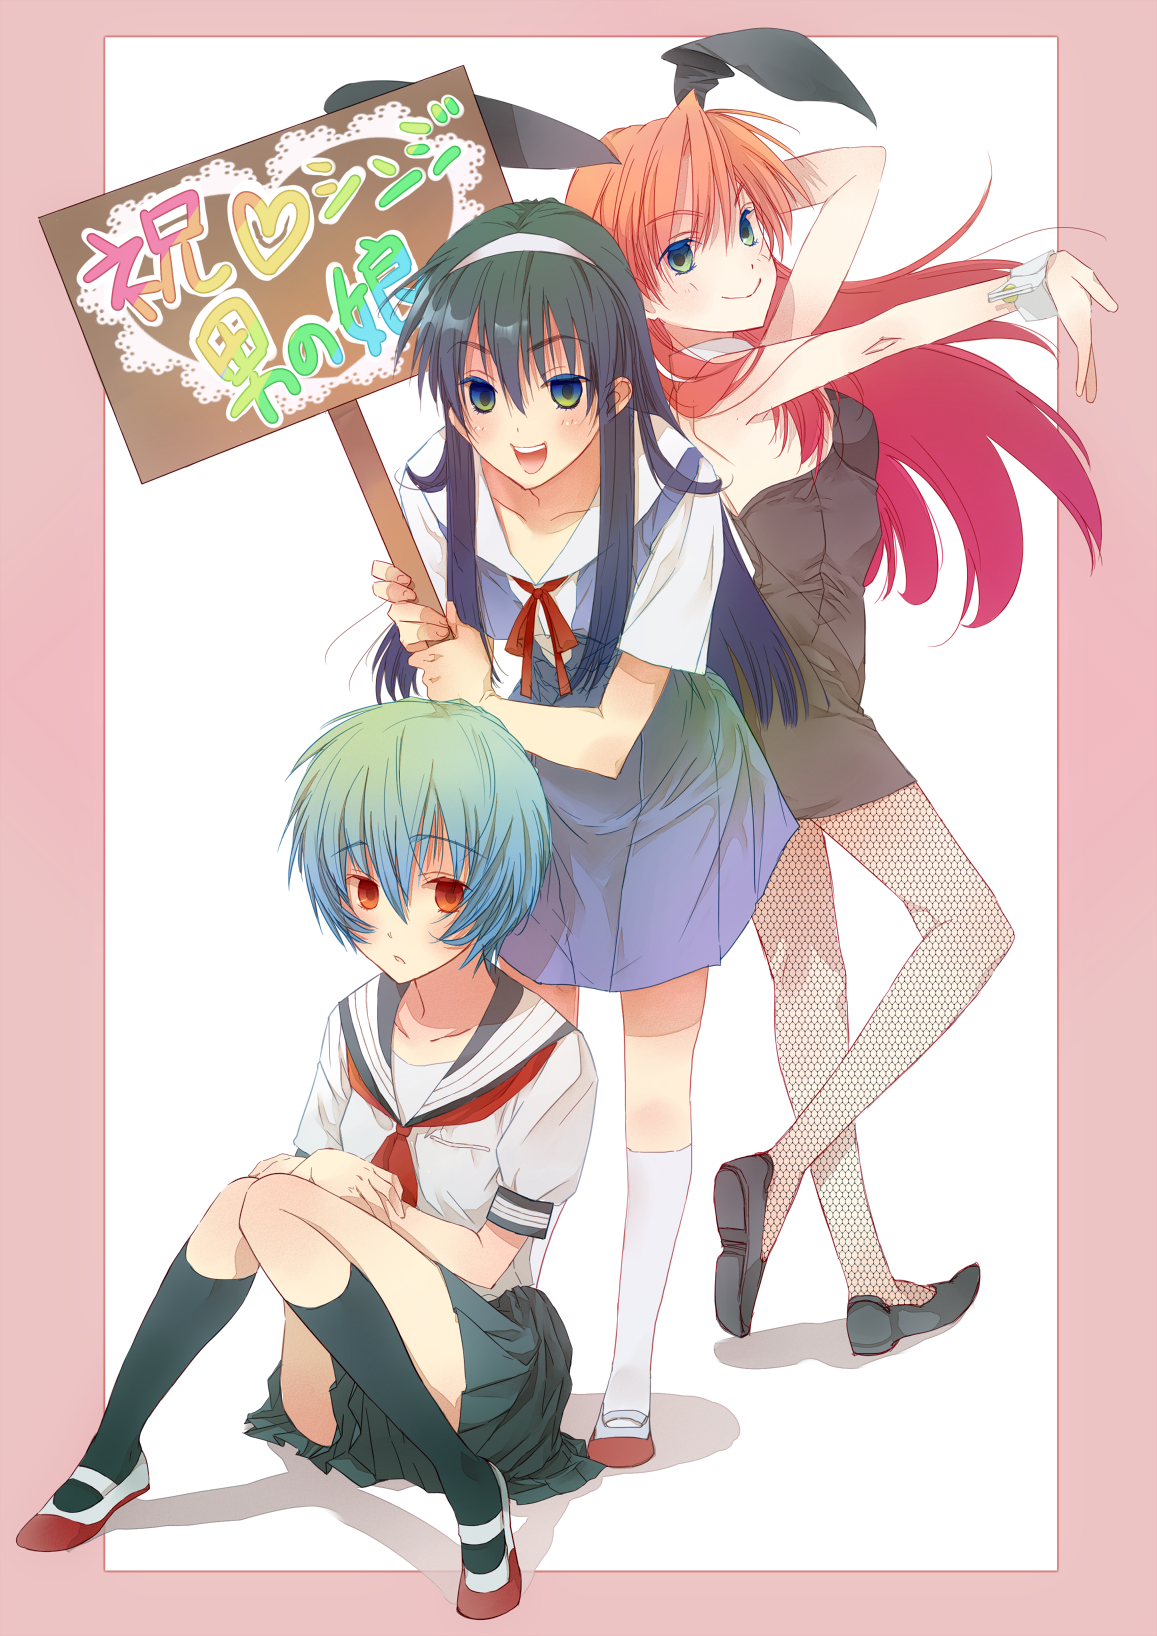 Rei, Shinji and Asuka